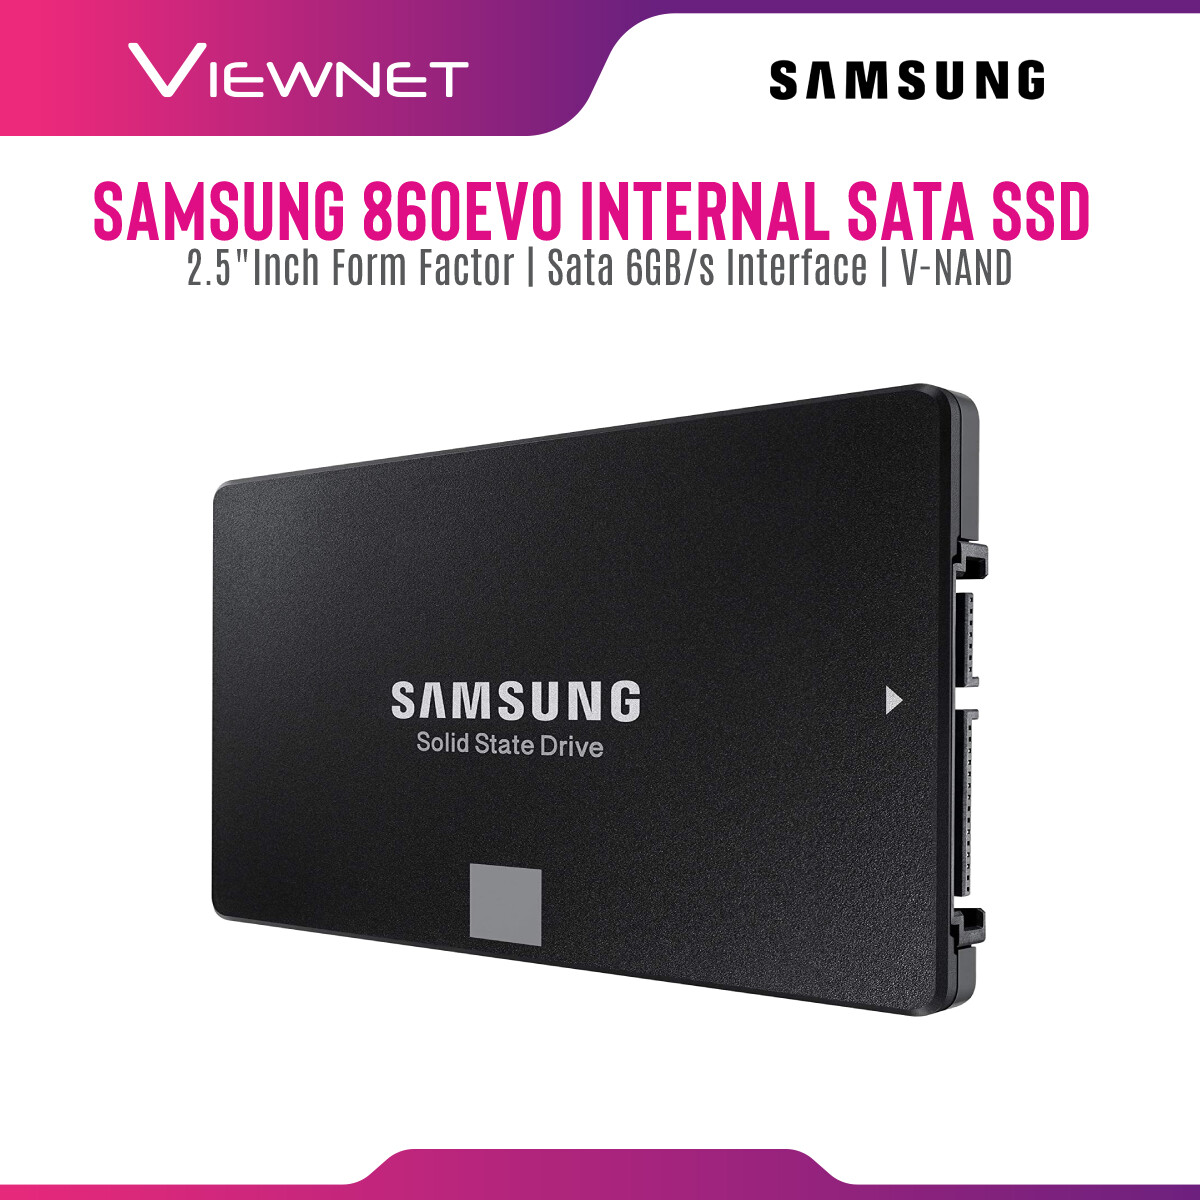 Samsung Internal SSD 870 EVO SATA III 2.5 inch V-NAND 3 bit MLC Internal Solid State Drive (250GB/500GB/1TB/2TB/4TB) Up to 550MB/s Internal SSD